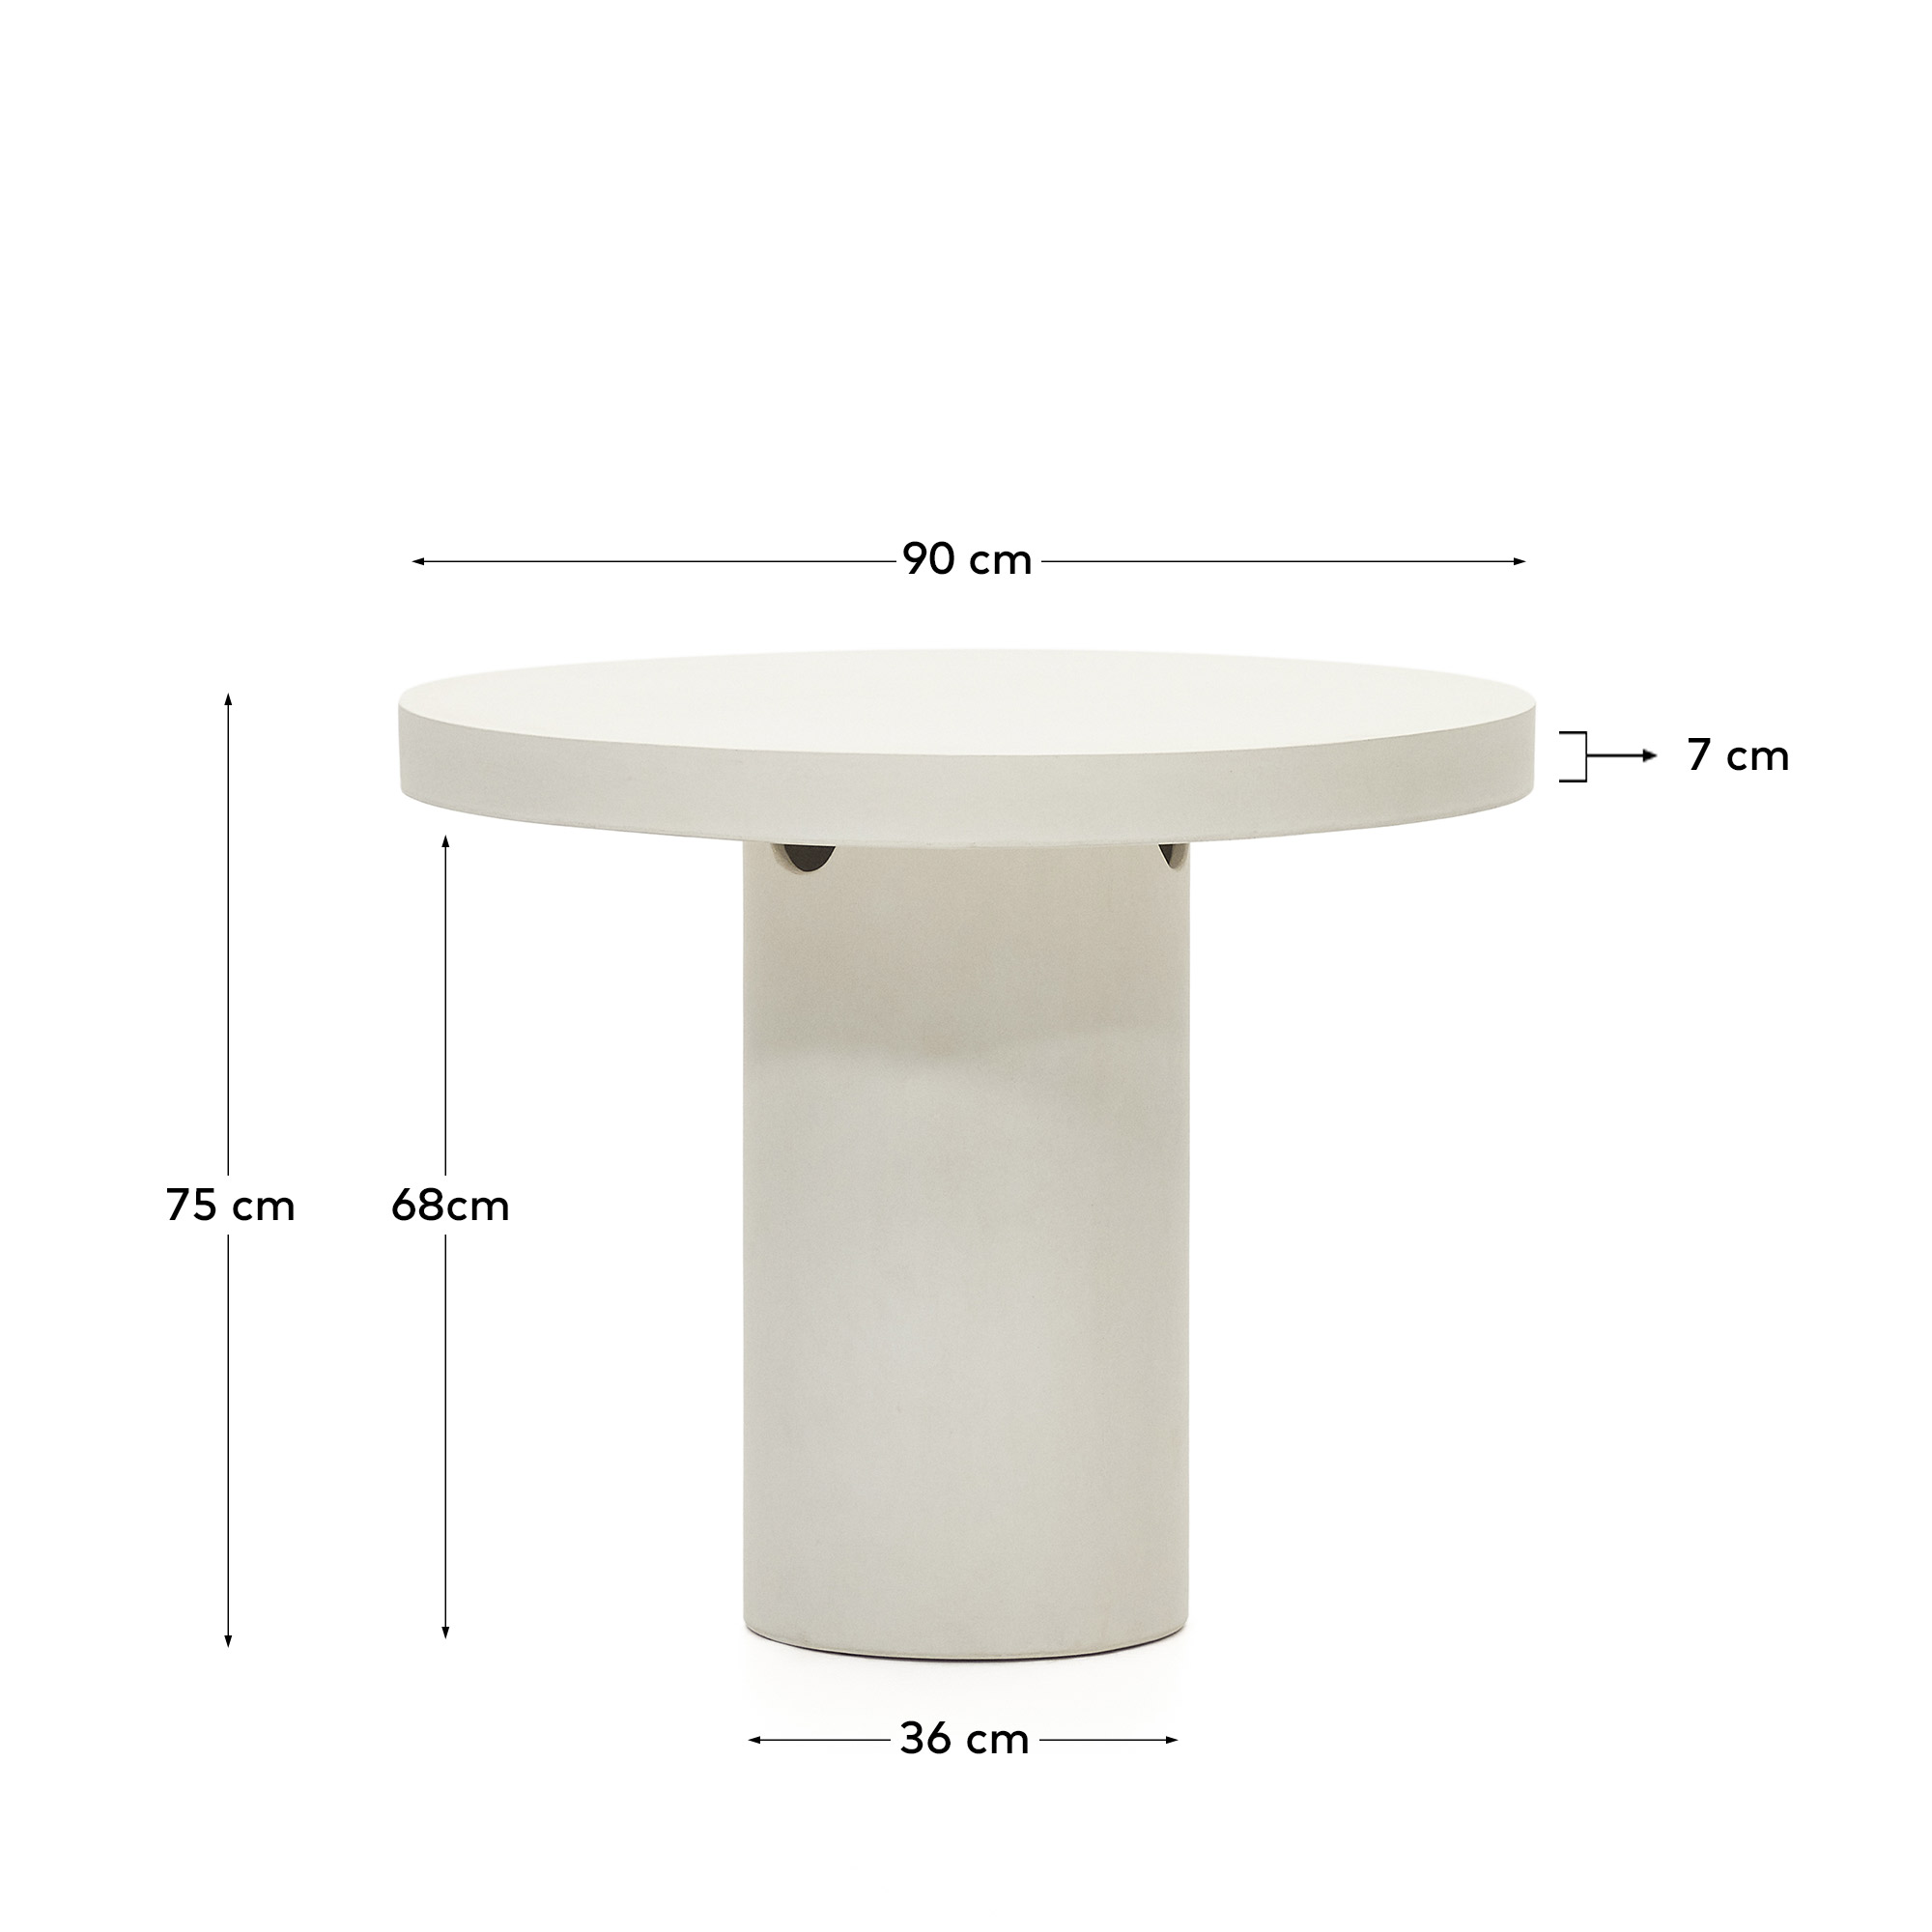 구아블라 화이트 시멘트 라운드 테이블 Ø 90cm - 크기